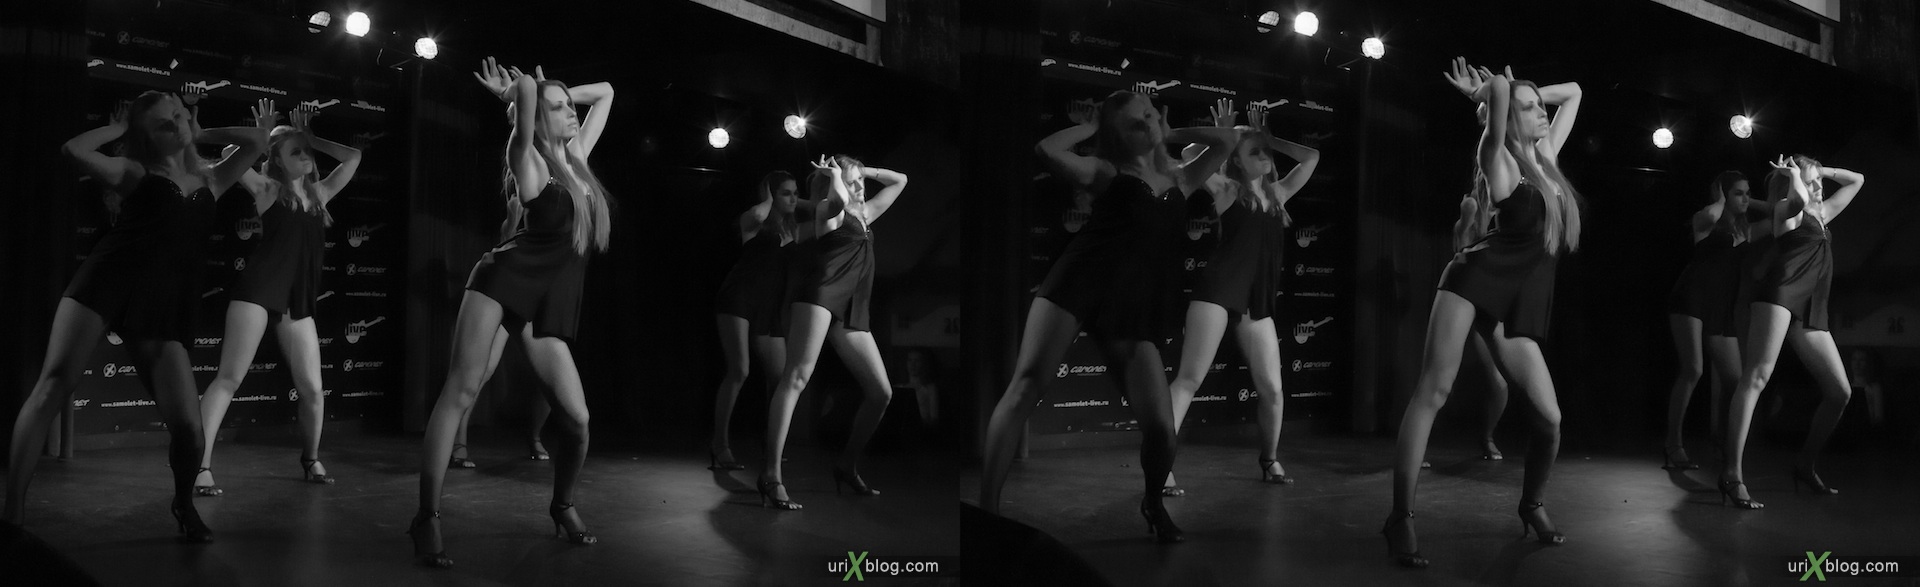 2012, танцы, девушки, Vesta, Веста, клуб Самолёт, Москва, 3D, перекрёстные стереопары, стерео, стереопара, стереопары